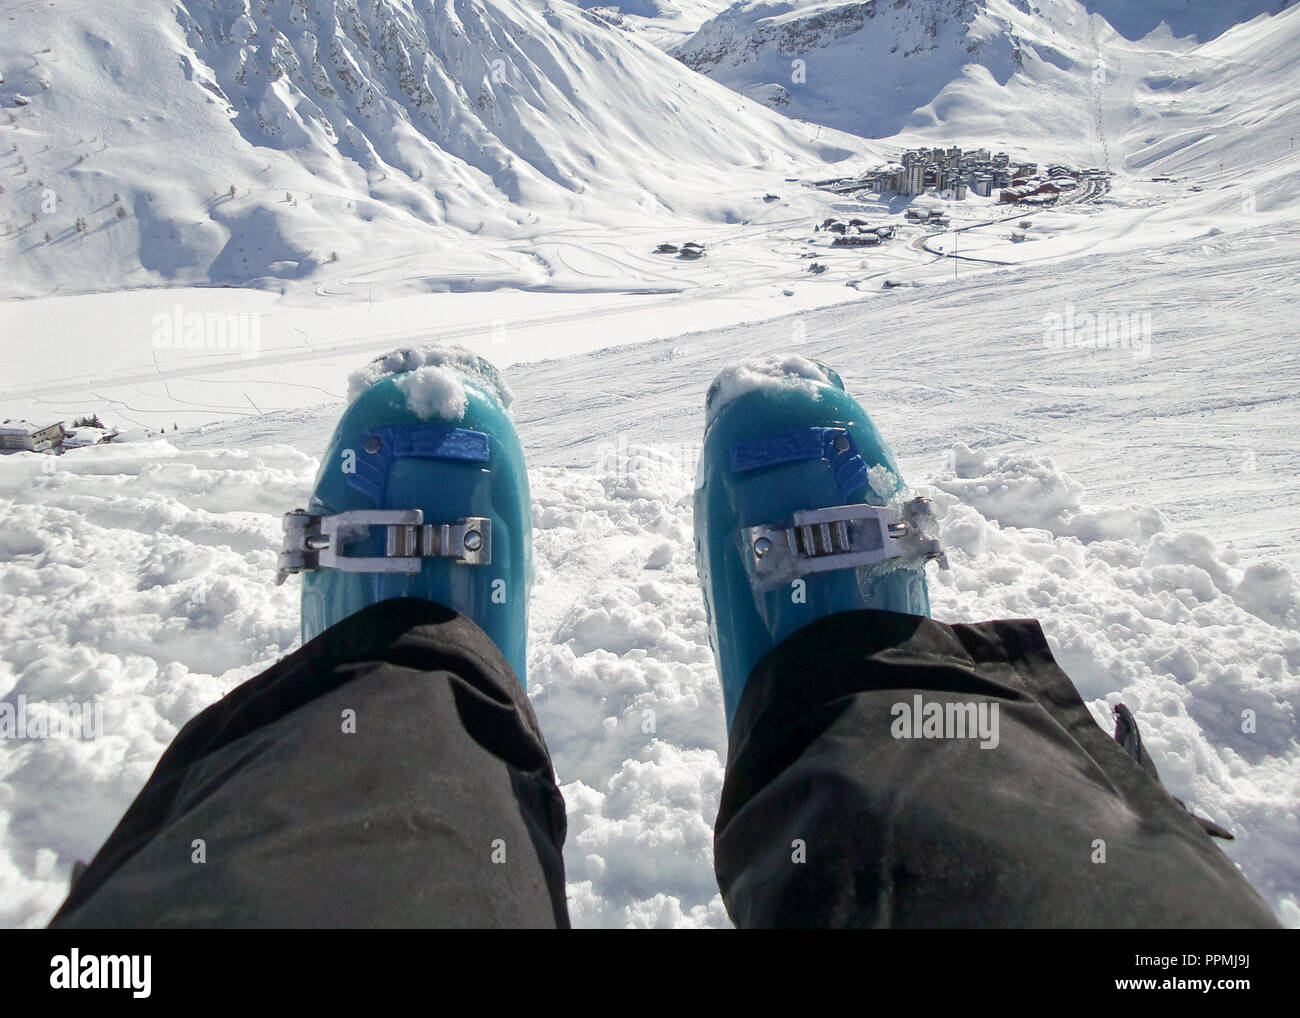 Entspannen Sie sich auf einer Skipiste, Tignes Ski Resort, die Alpen, Frankreich Stockfoto